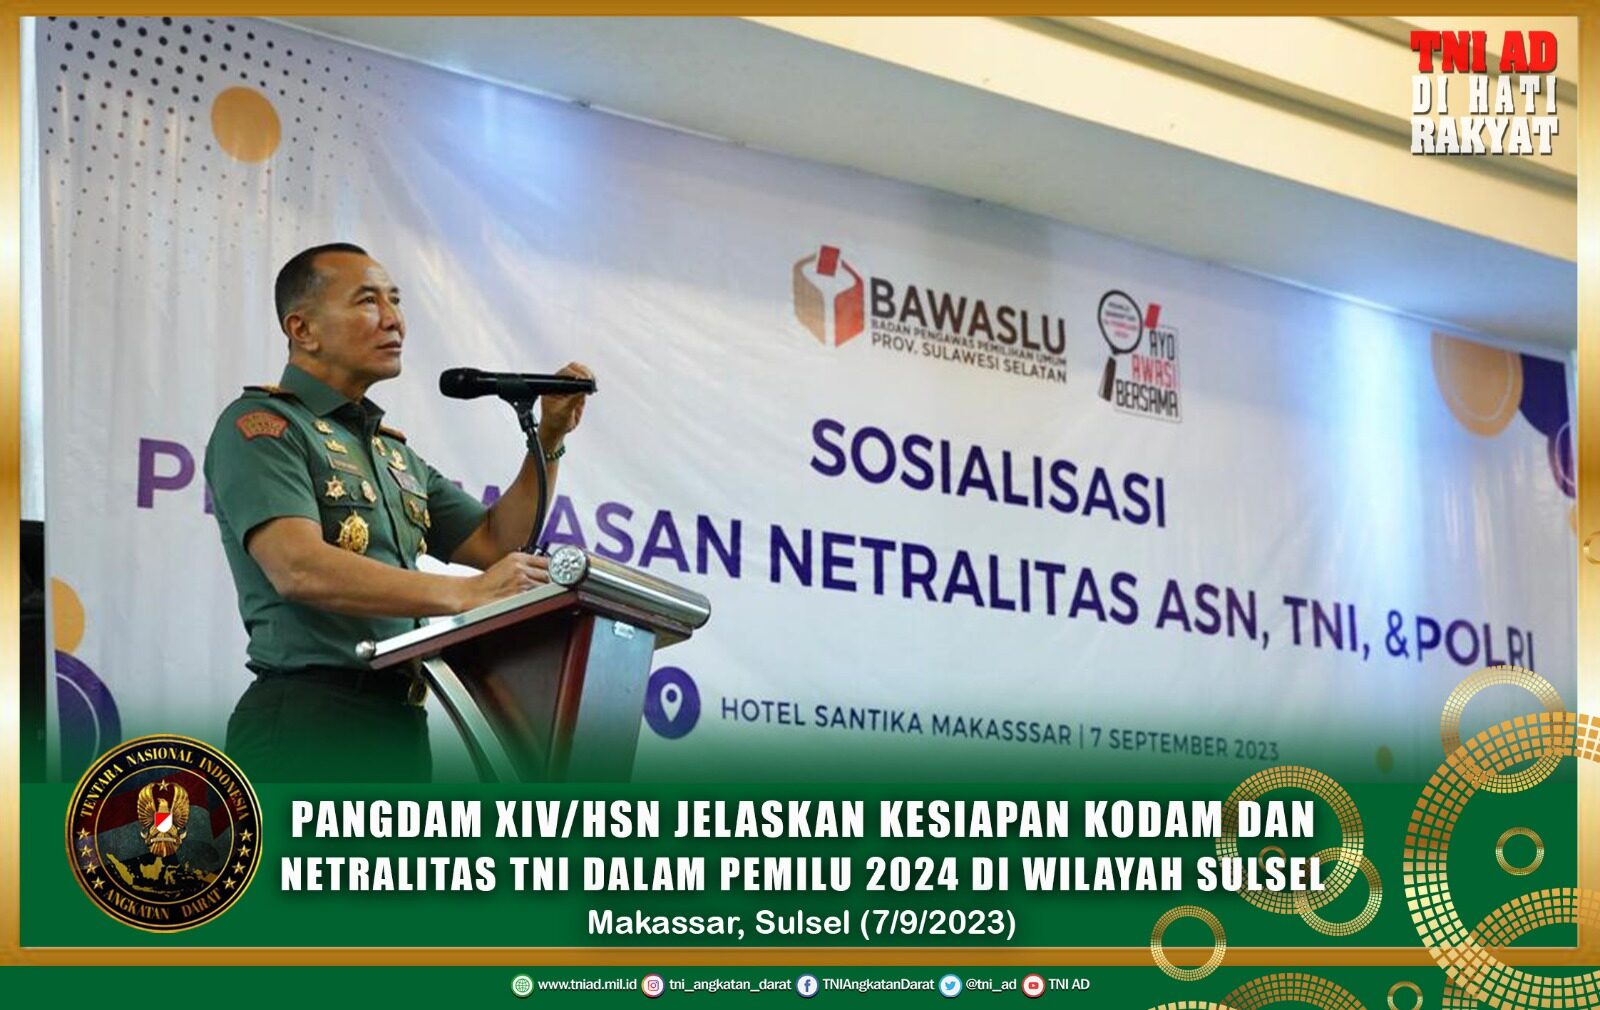 Pangdam XIV/Hsn Jelaskan Kesiapan Kodam dan Netralitas TNI Dalam Pemilu 2024 di Wilayah Sulsel